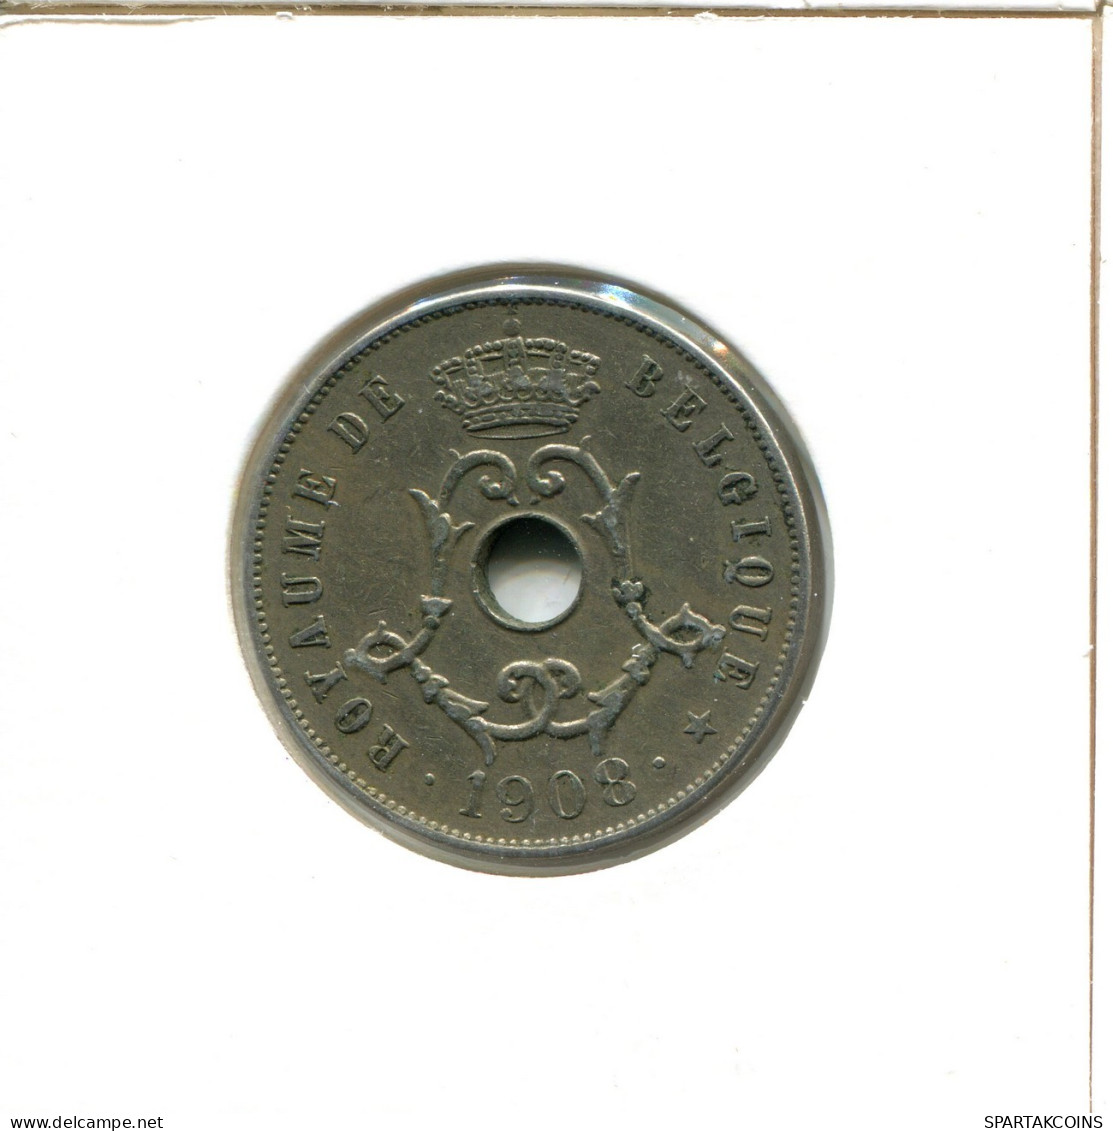 25 CENTIMES 1908 BÉLGICA BELGIUM Moneda FRENCH Text #AX403.E.A - 25 Centimes